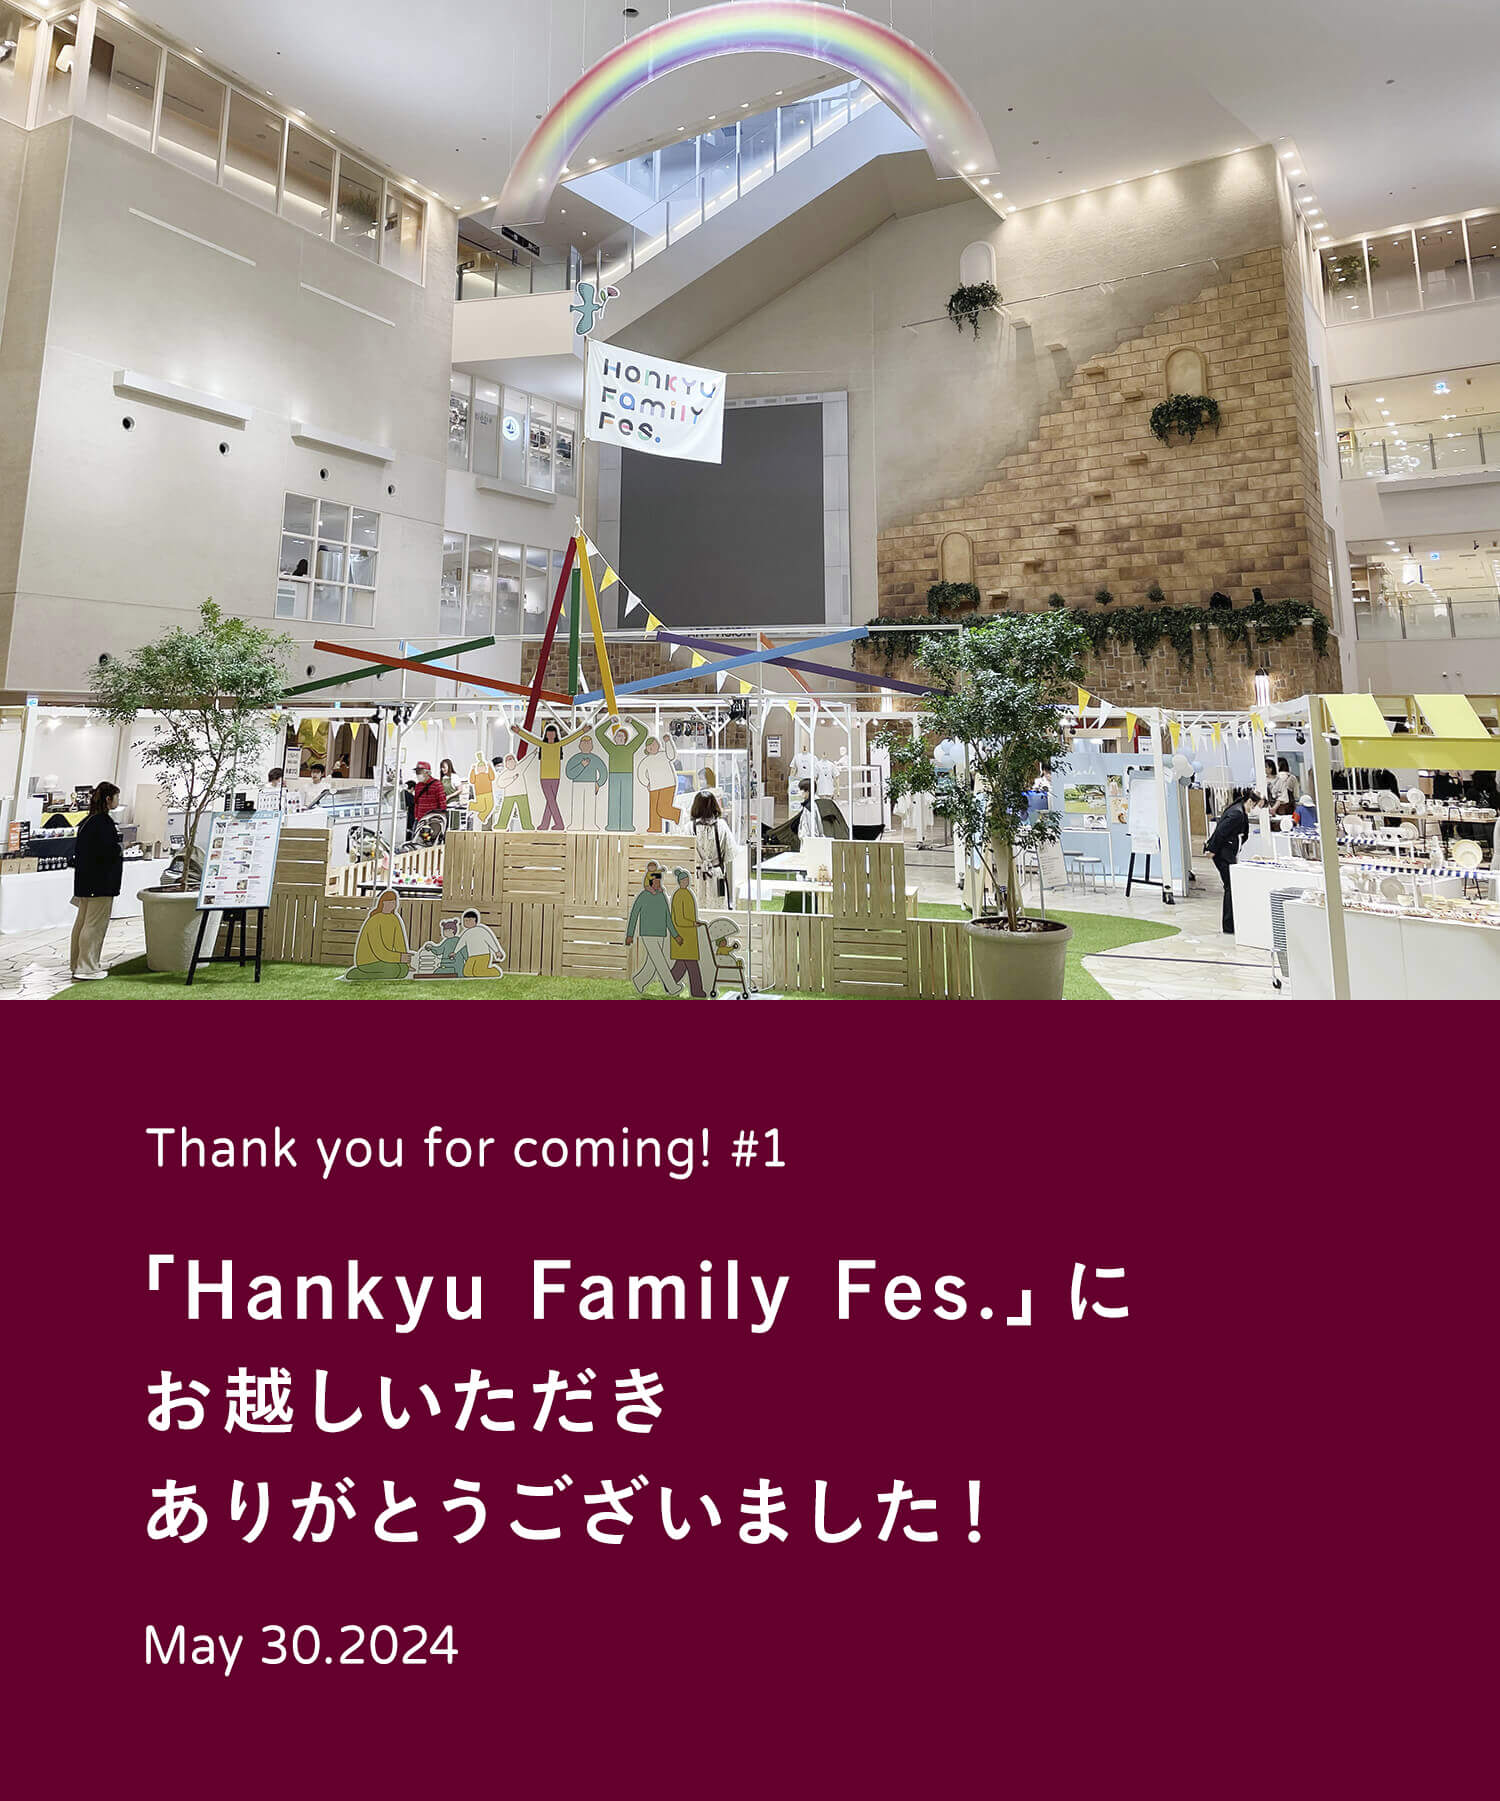 阪急うめだ本店開催「Hankyu Family Fes.」にお越しいただきありがとうございました！